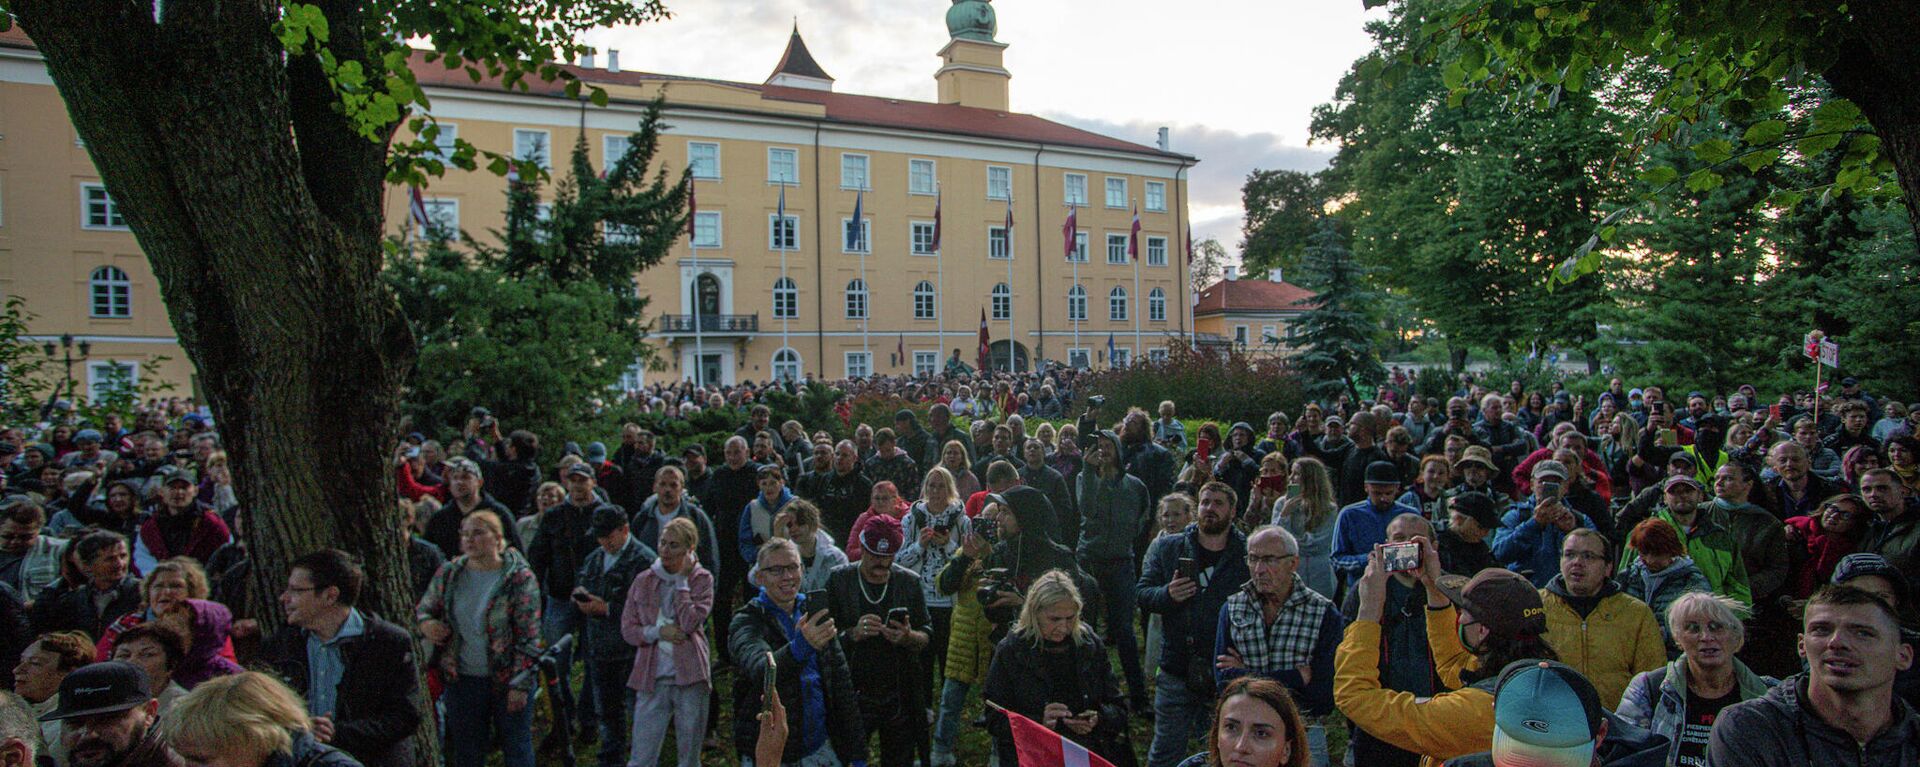 Люди собрались у Рижского замка протестовать против обязательной вакцинации - Sputnik Латвия, 1920, 01.09.2021